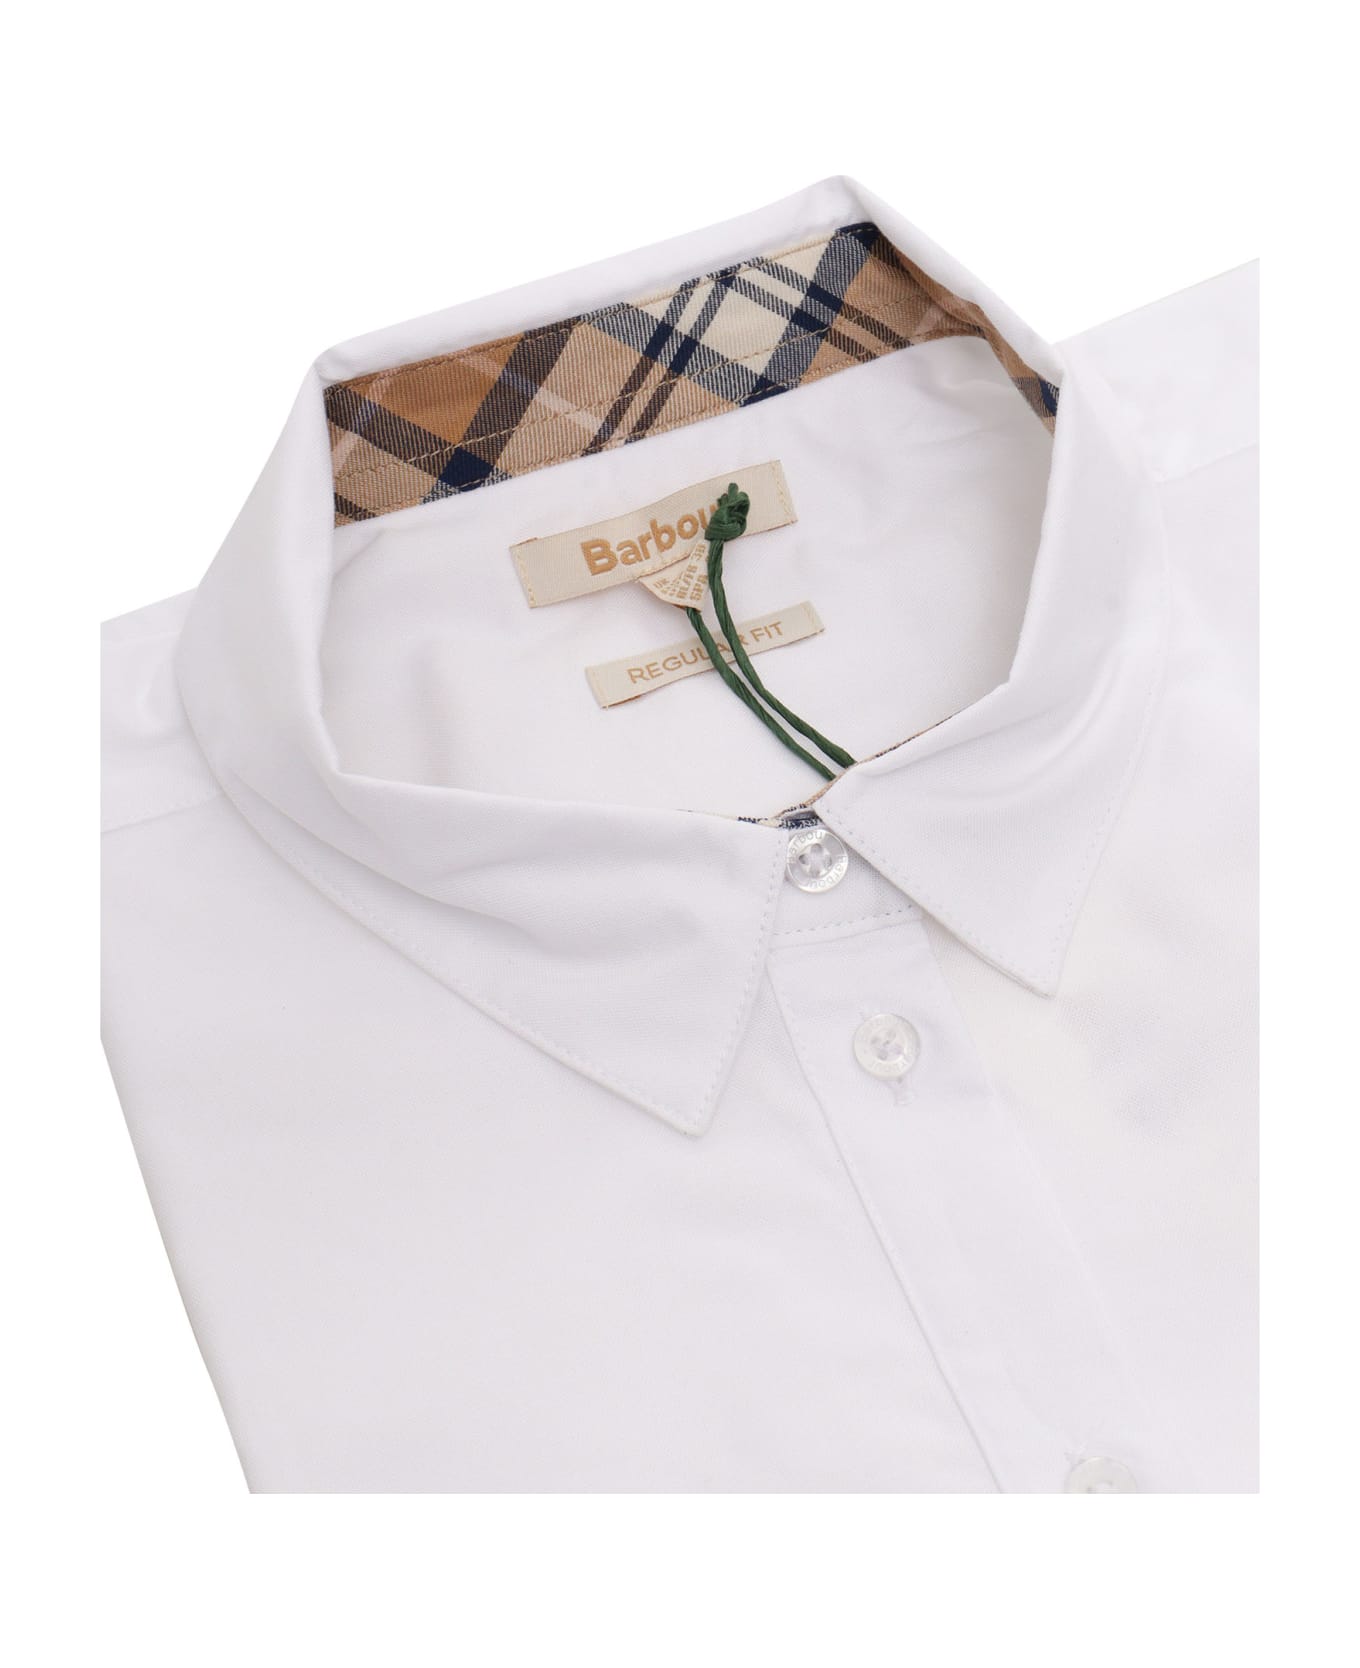 Barbour White Denver Shirt - WHITE シャツ